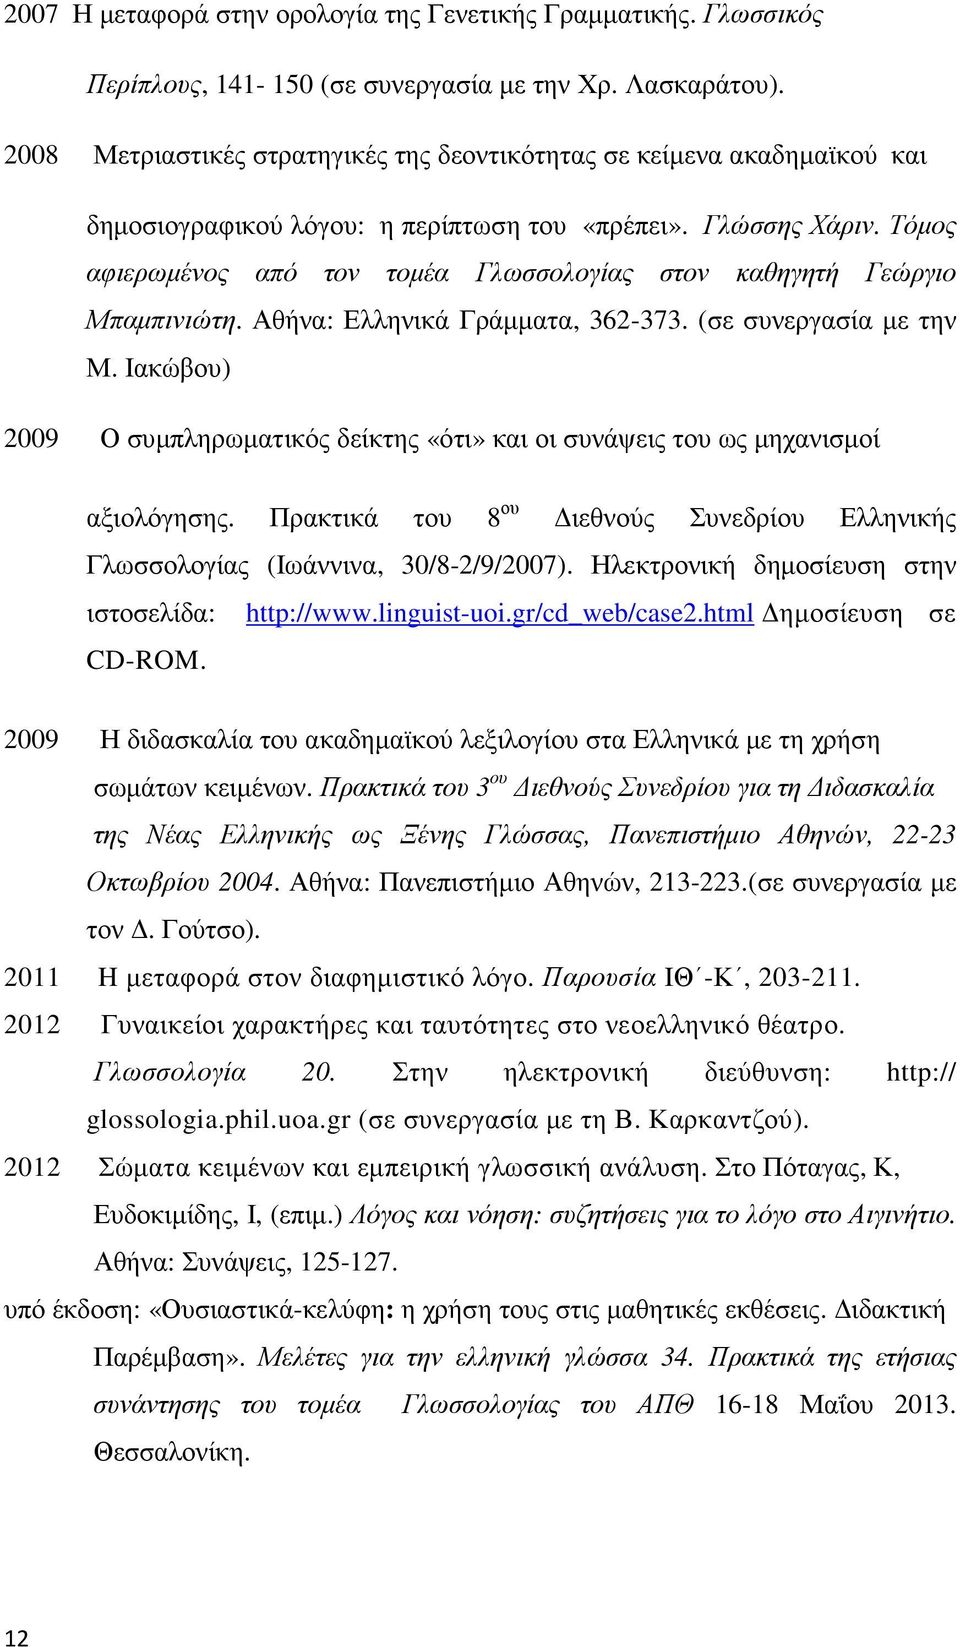 Τόµος αφιερωµένος από τον τοµέα Γλωσσολογίας στον καθηγητή Γεώργιο Μπαµπινιώτη. Αθήνα: Ελληνικά Γράµµατα, 362-373. (σε συνεργασία µε την Μ.